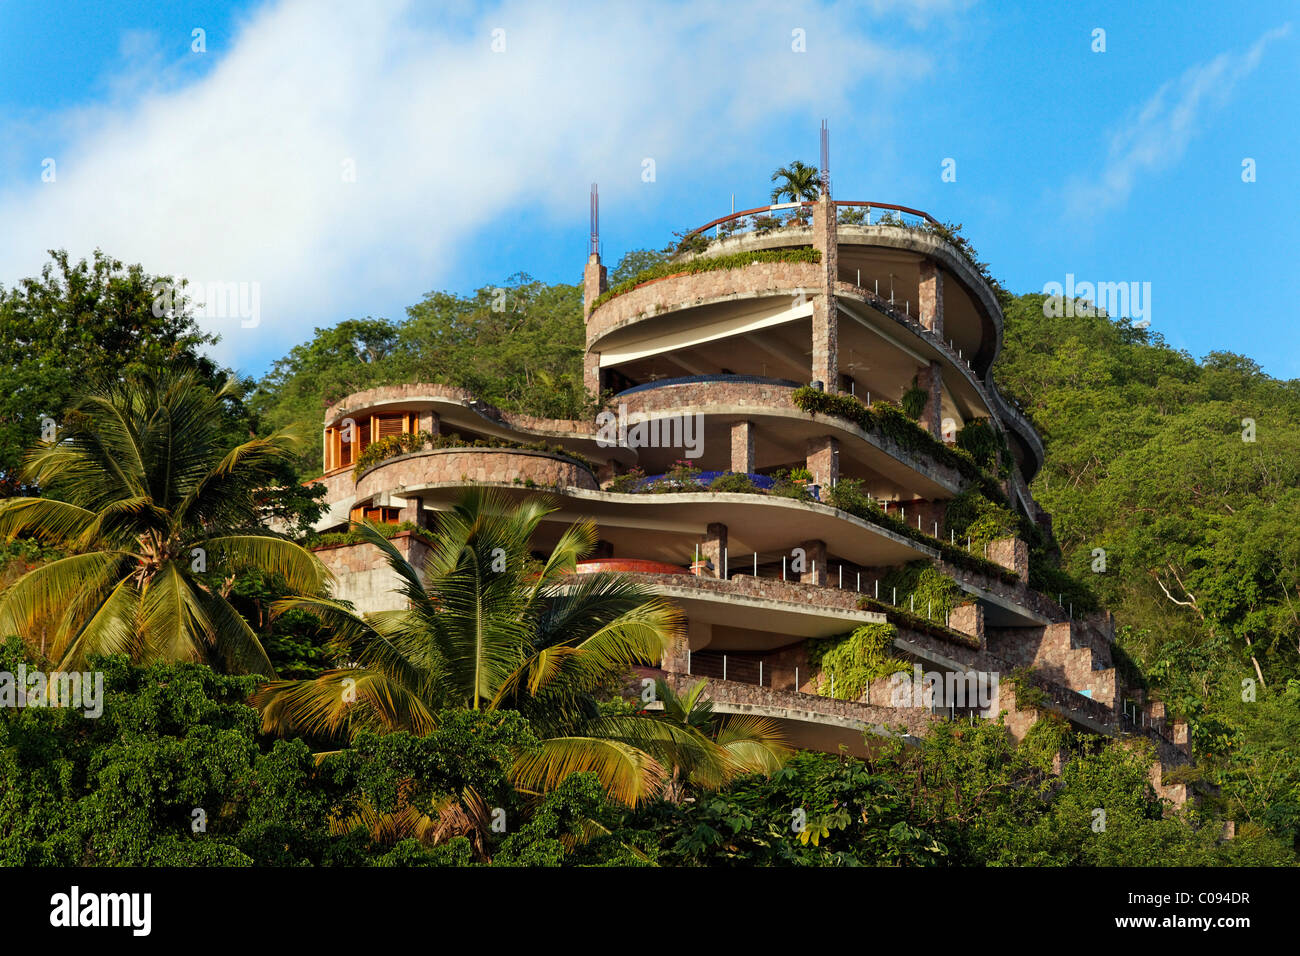 Jade Mountain hôtel de luxe, pas de mur extérieur, forêt tropicale, Sainte-Lucie, îles du Vent, Lesser Antilles, Caribbean Banque D'Images